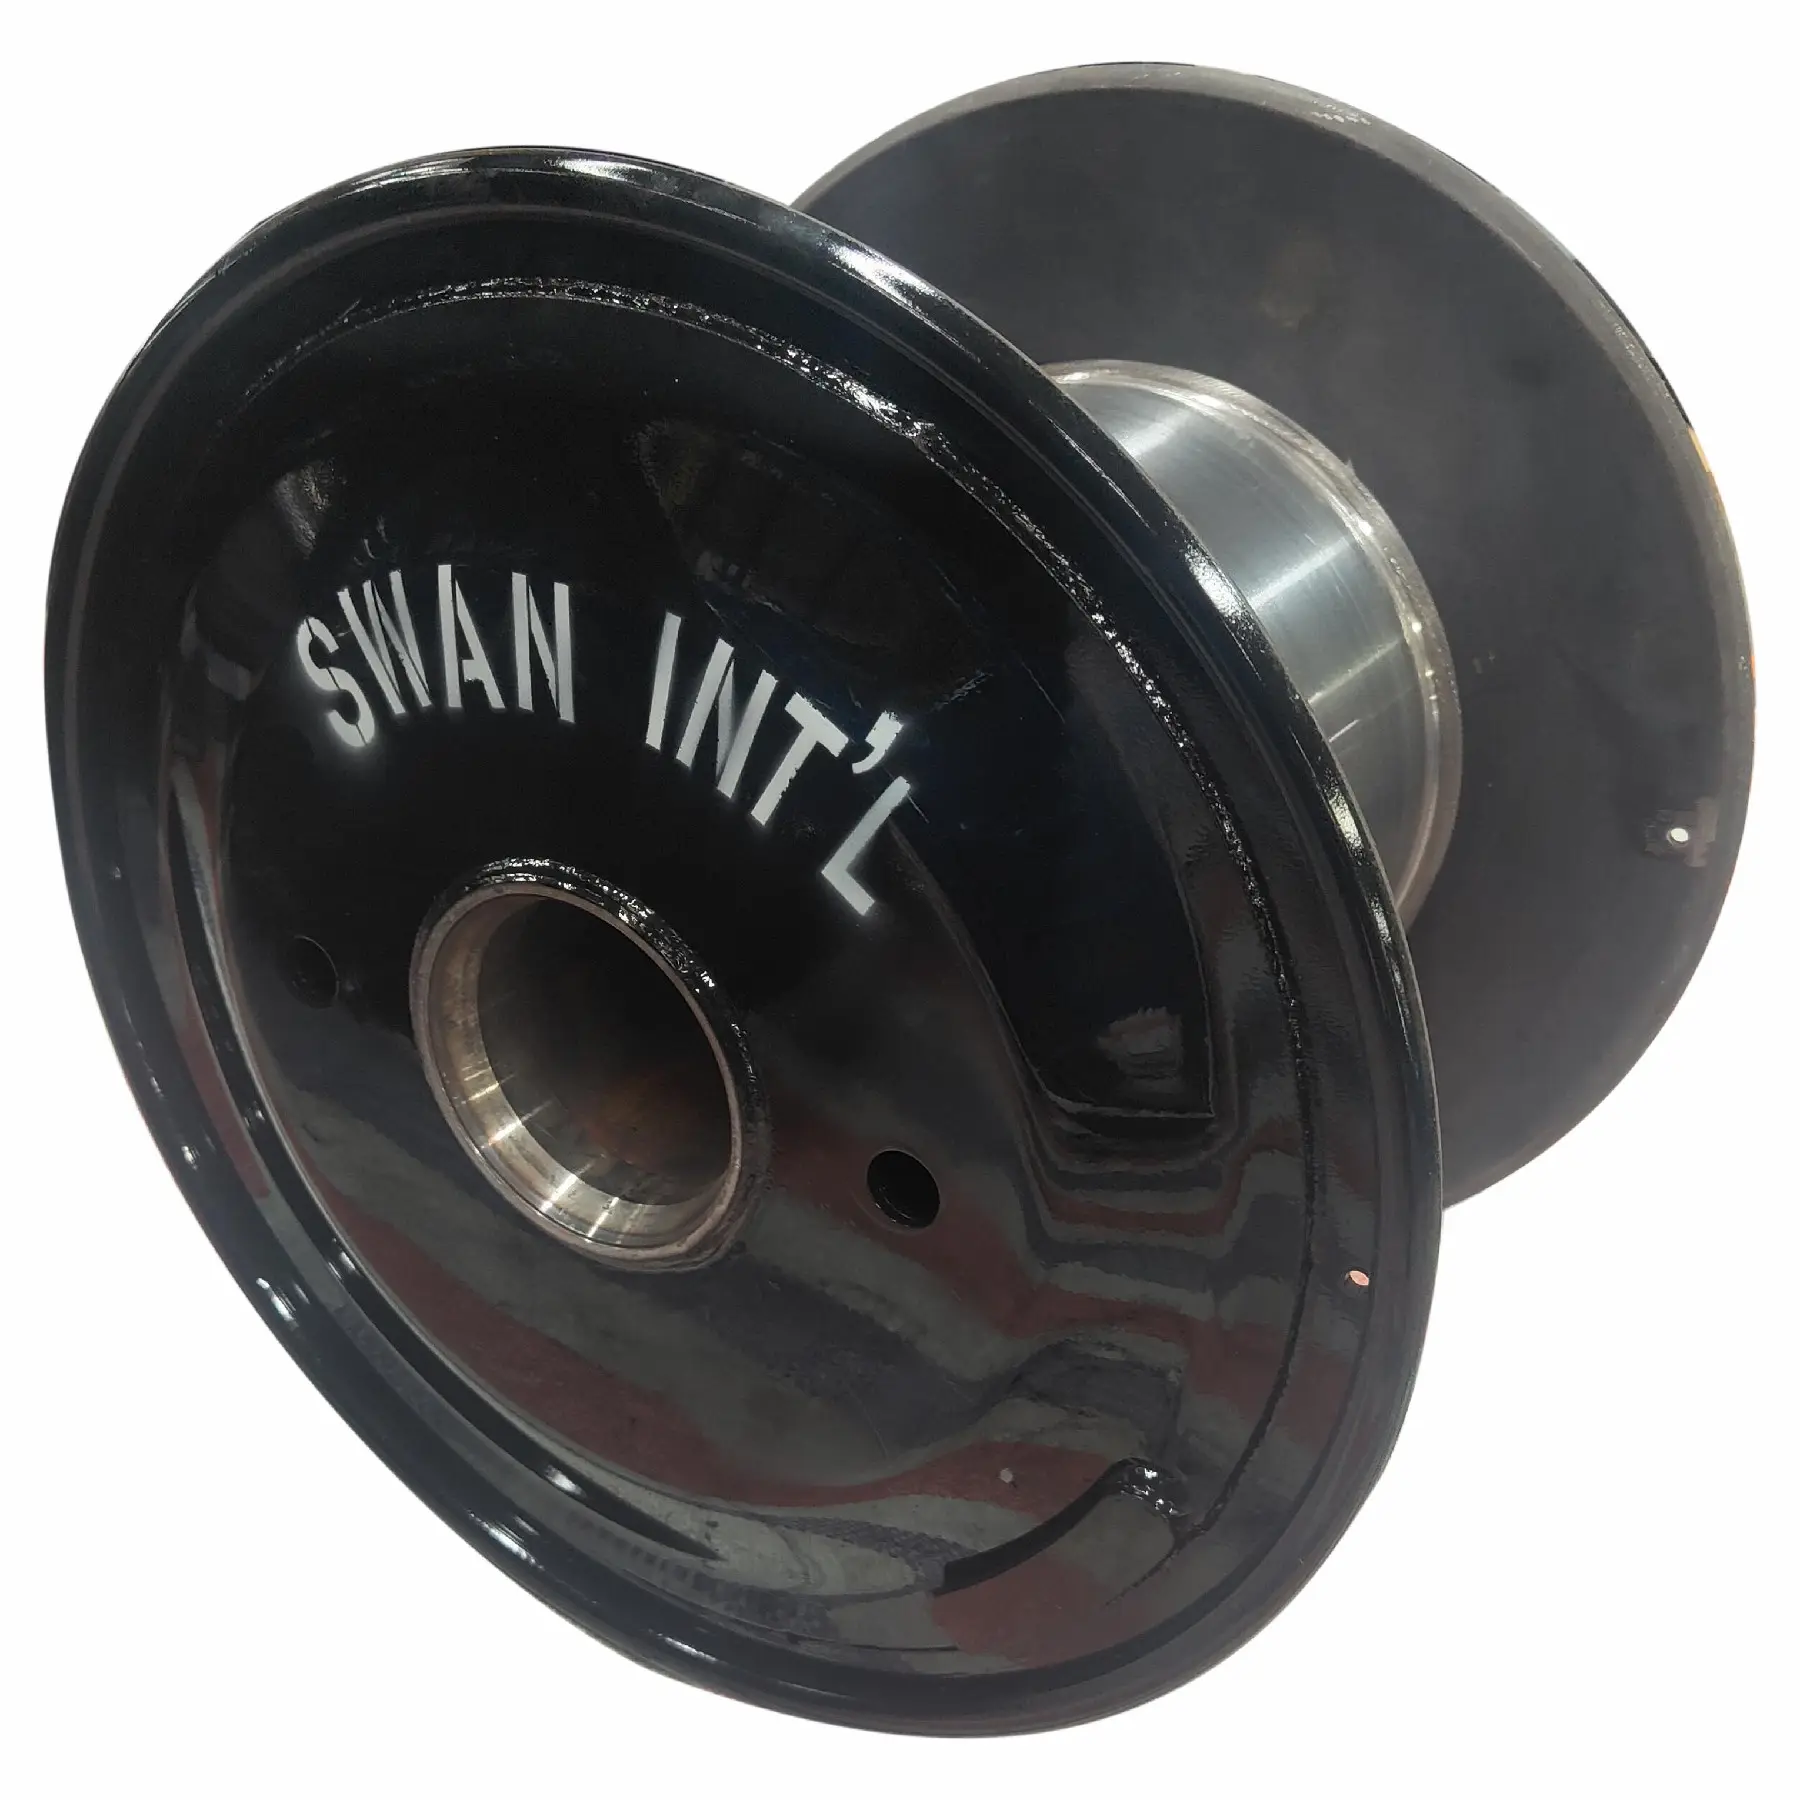 Shanghai SWAN Bobbin baja bergelombang kualitas terbaik untuk mesin pembuat kawat dan kabel Bobbin baja